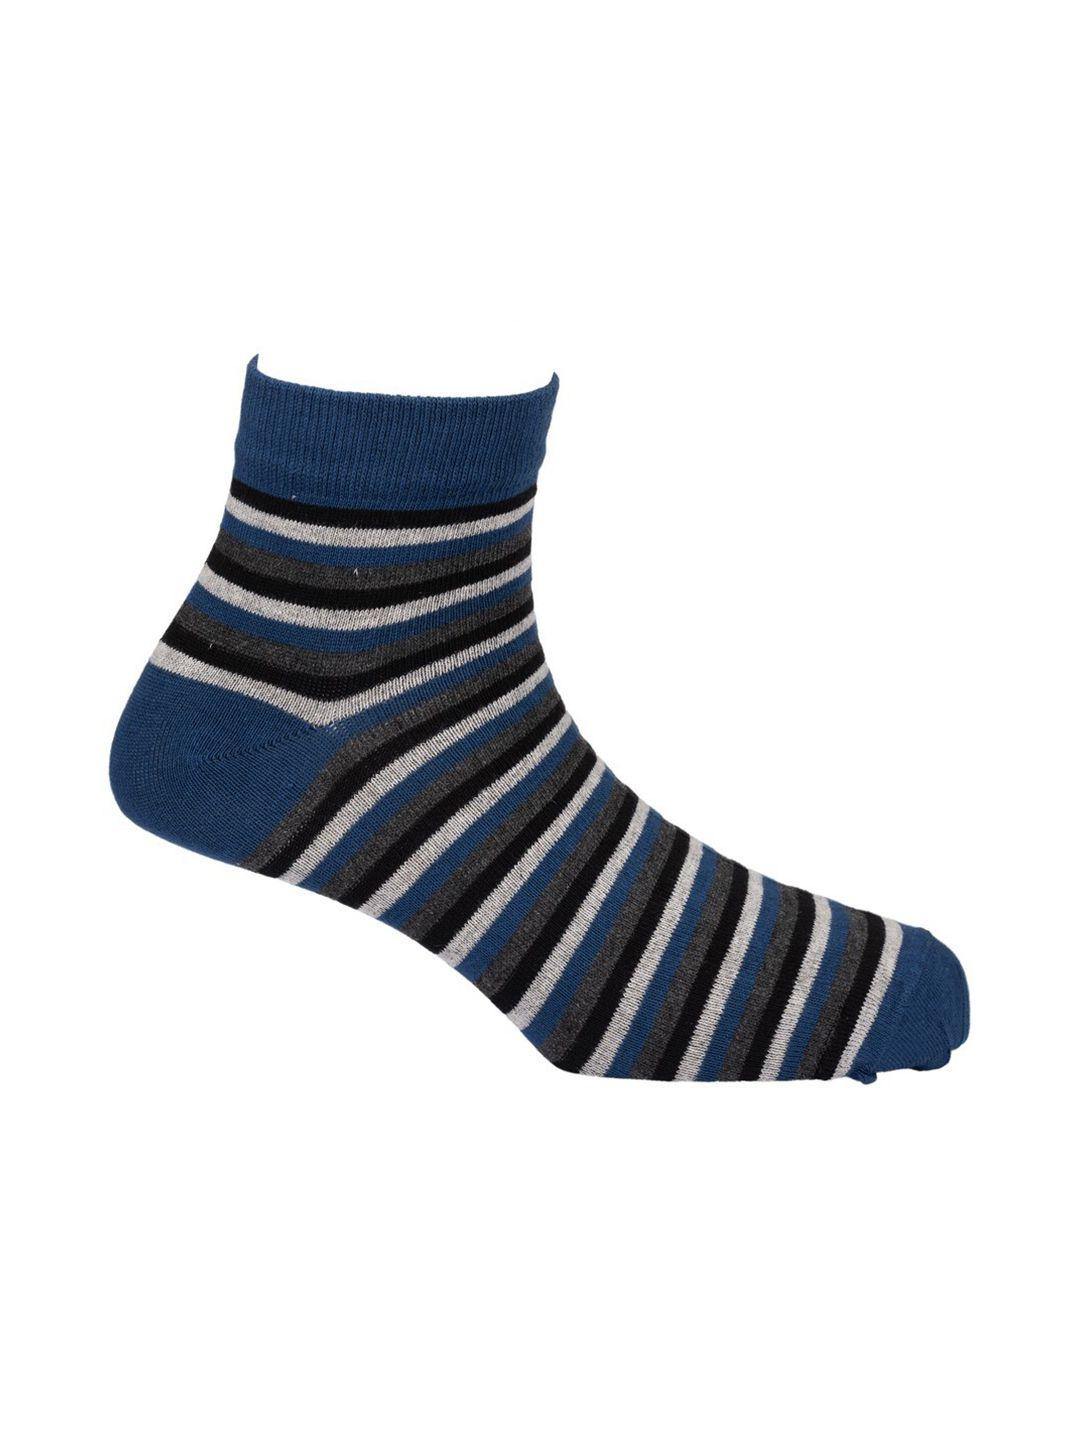 the-tie-hub-men-blue-&-white-striped-ankle-length-socks